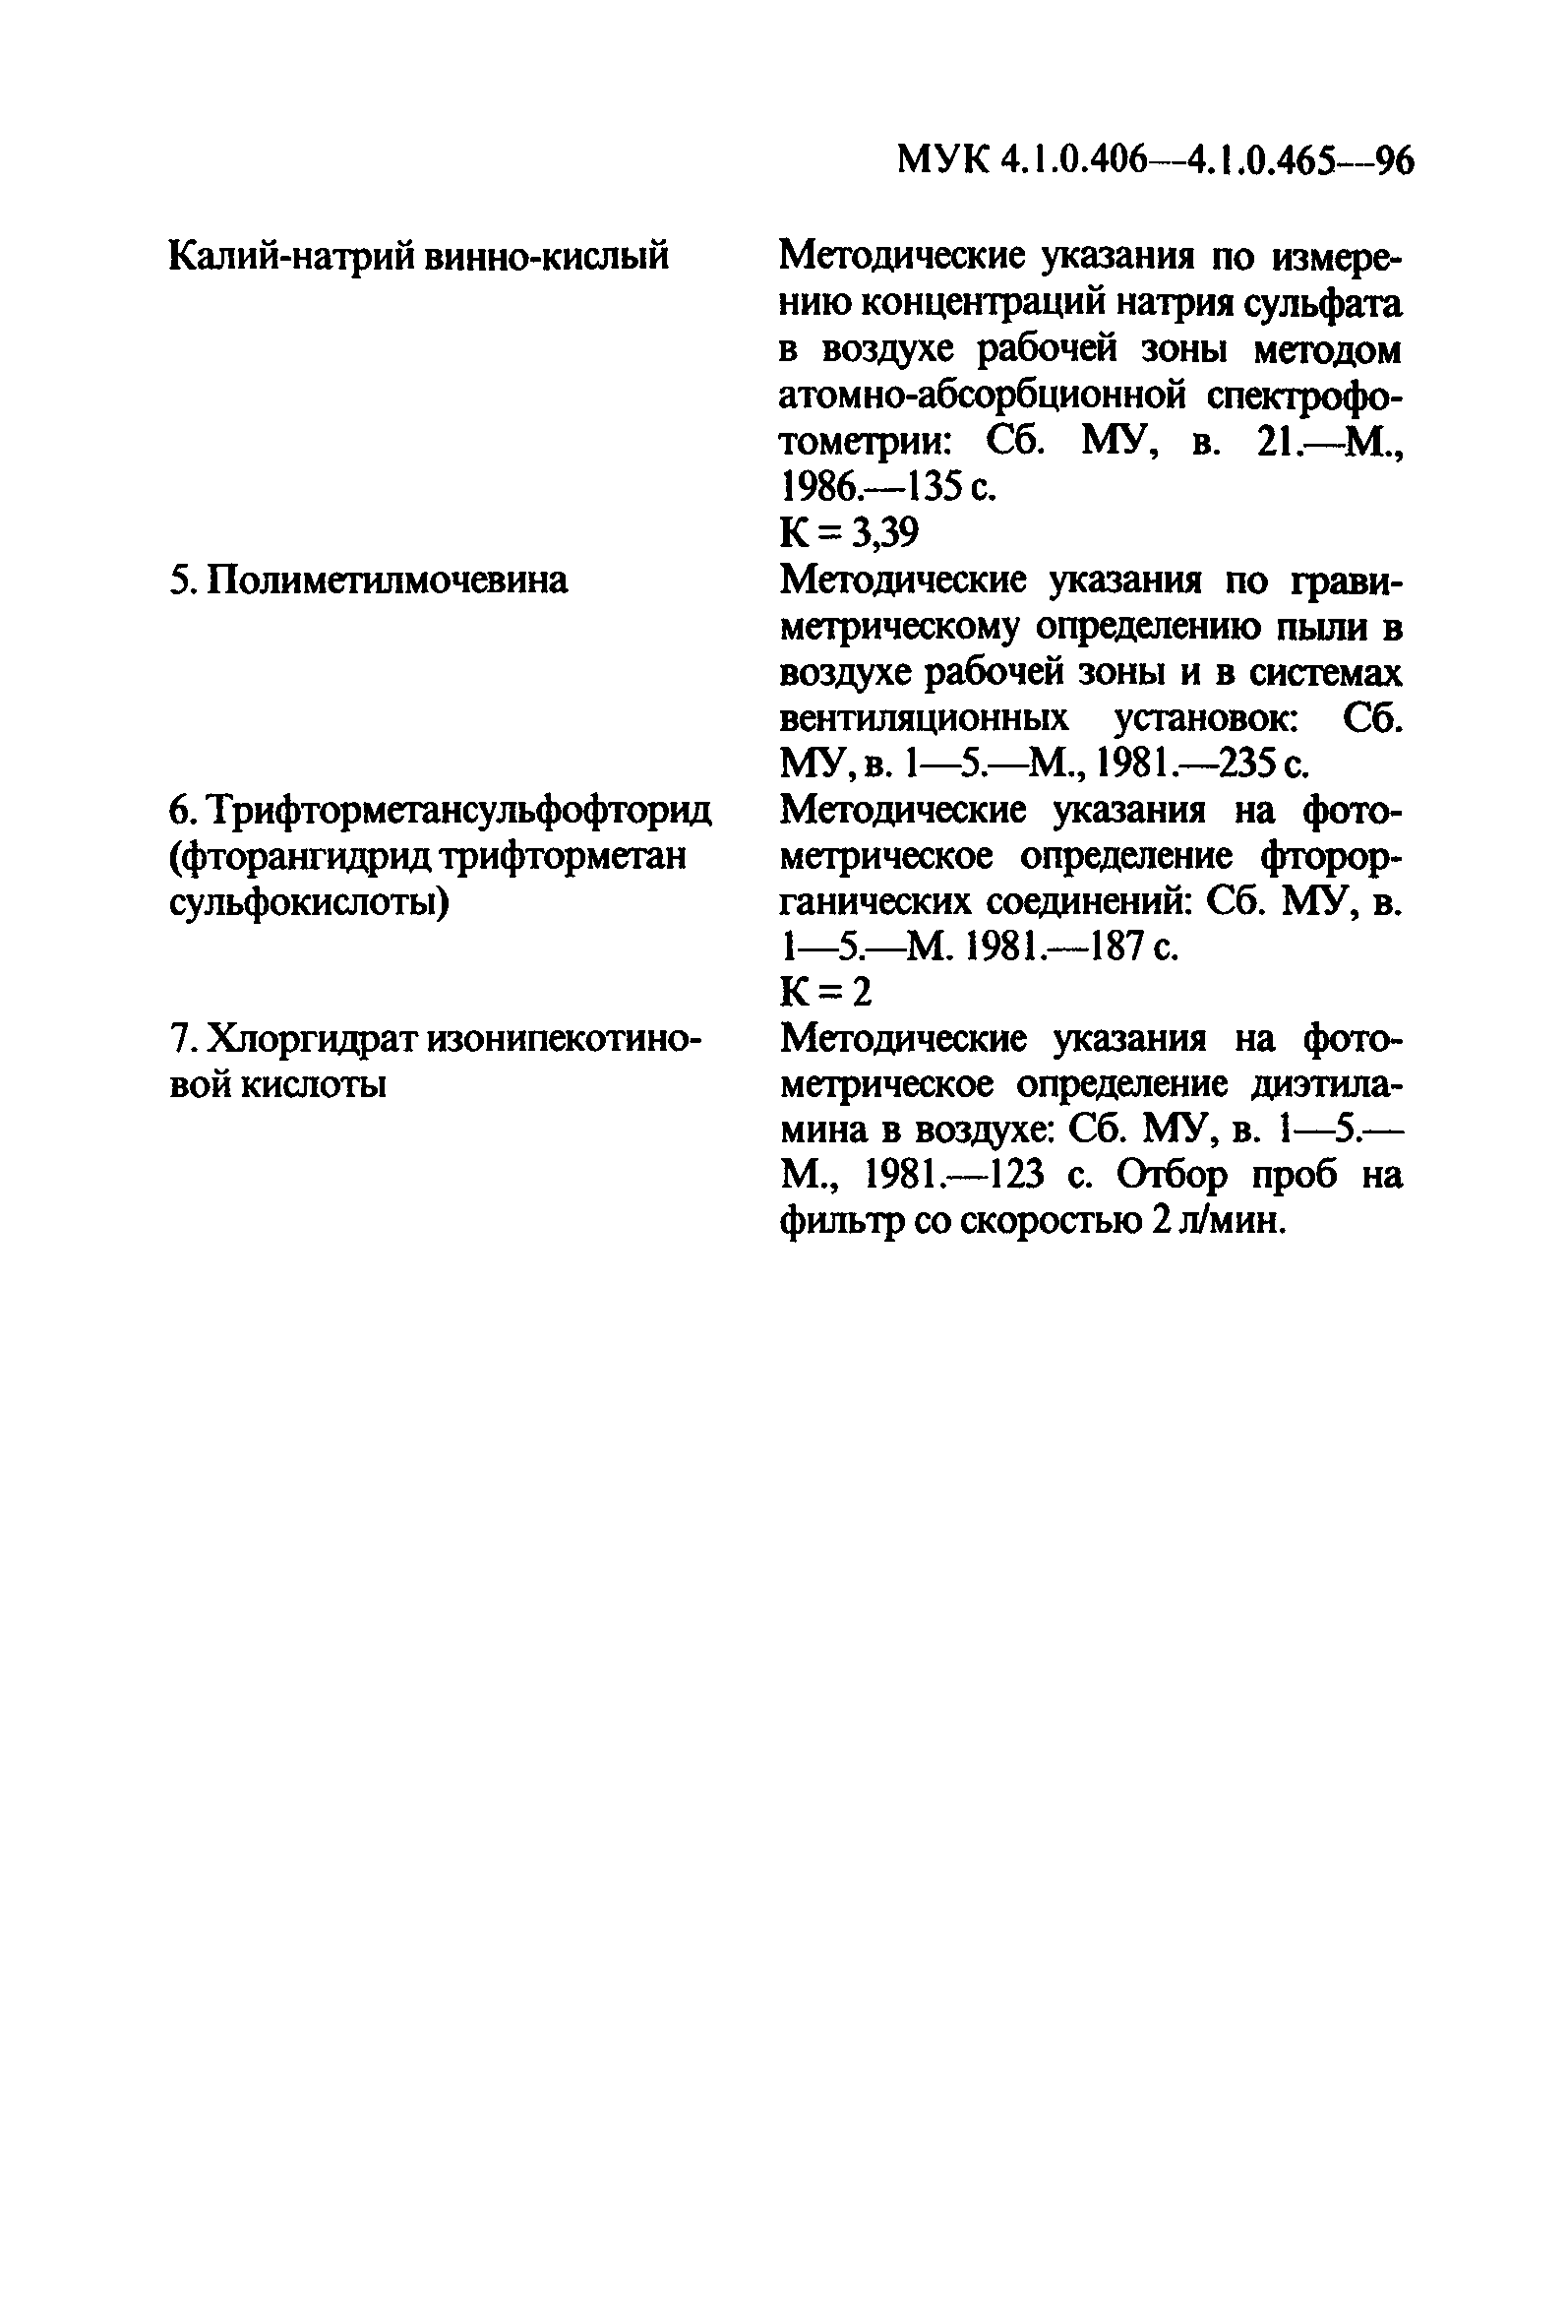 МУК 4.1.0.438-96